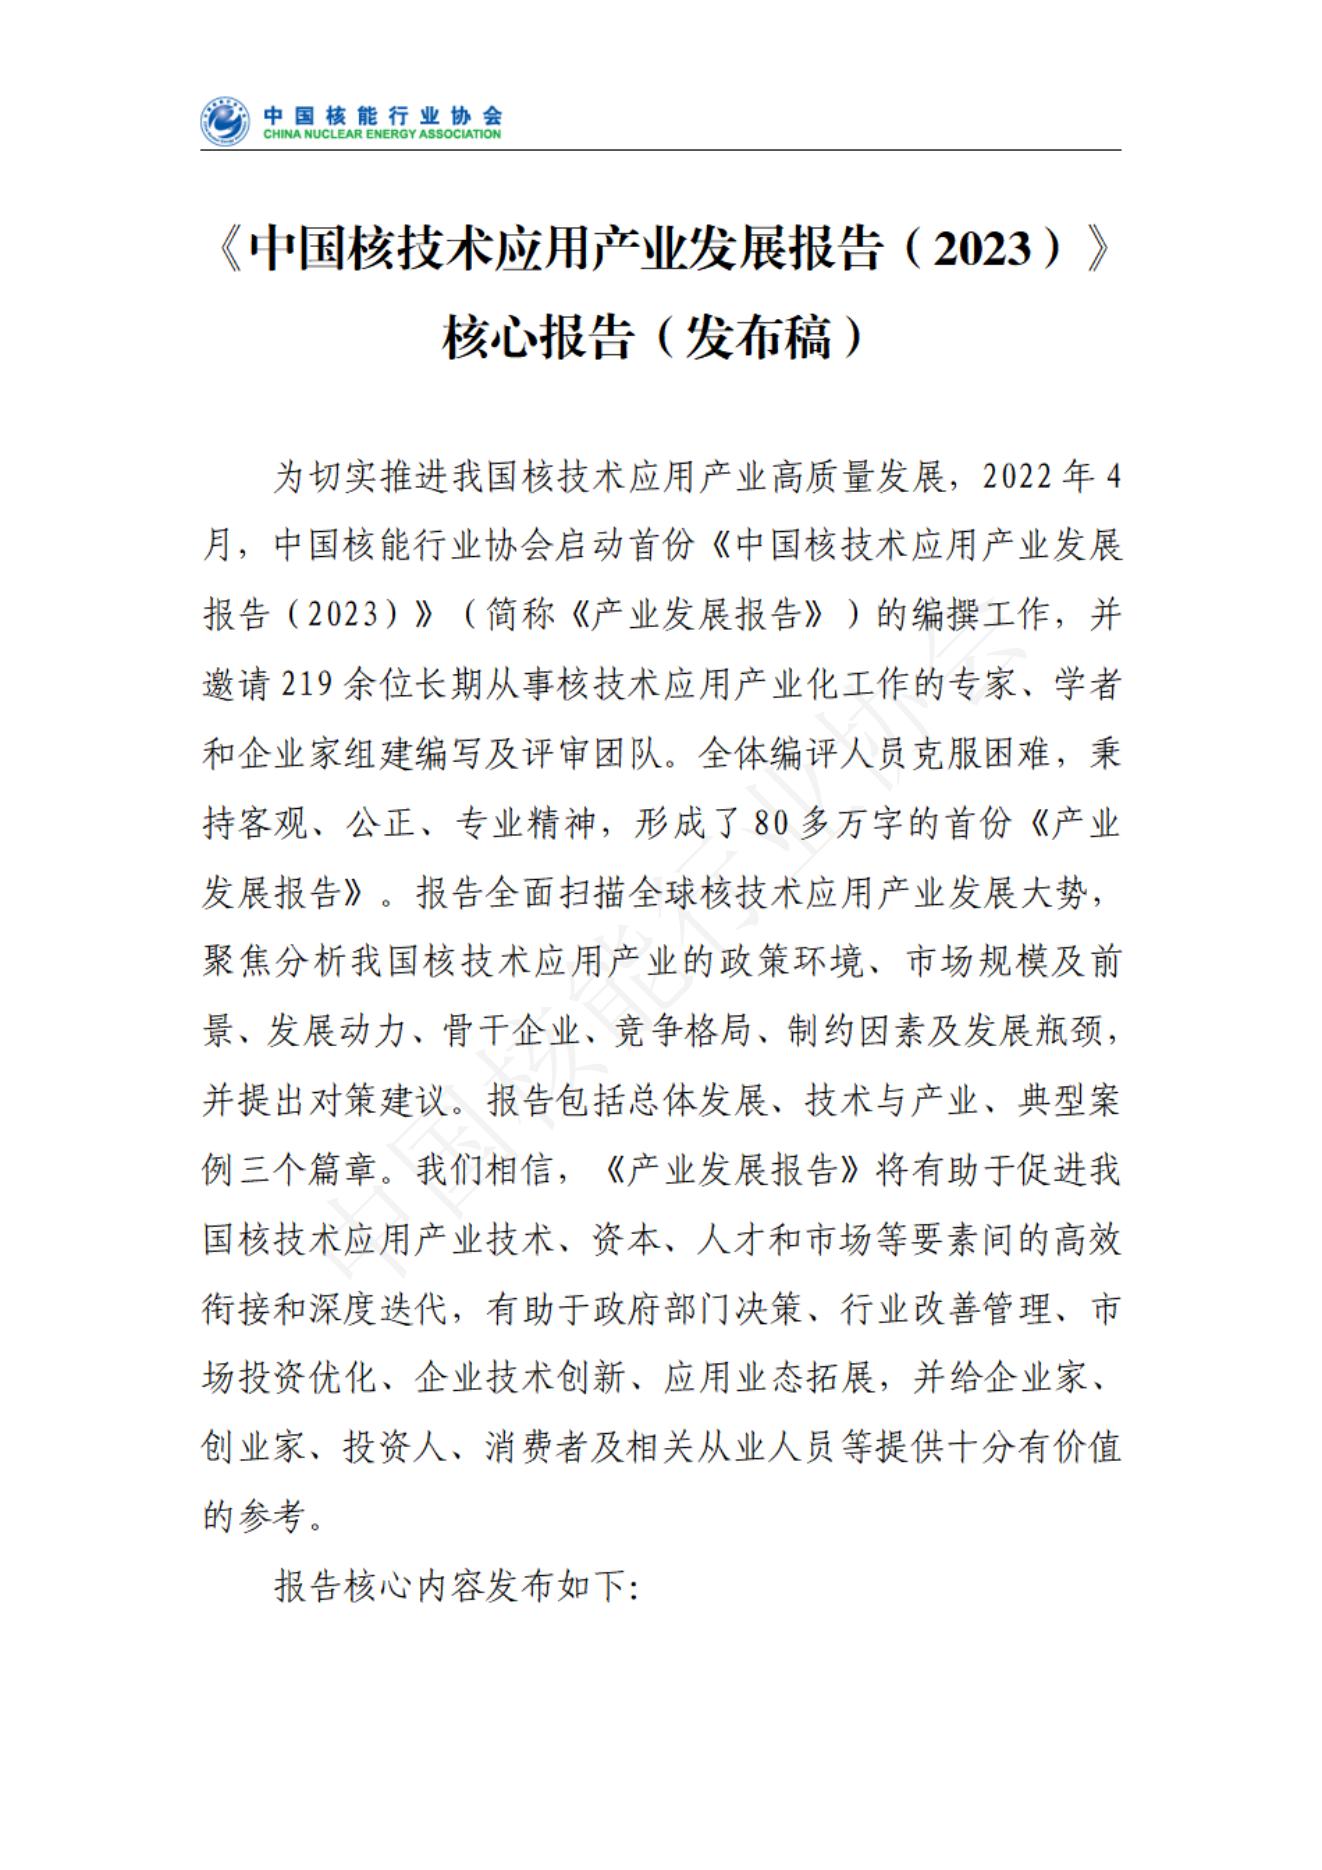 中国核技术应用产业发展报告核心报告（发布稿）(1)_00.jpg